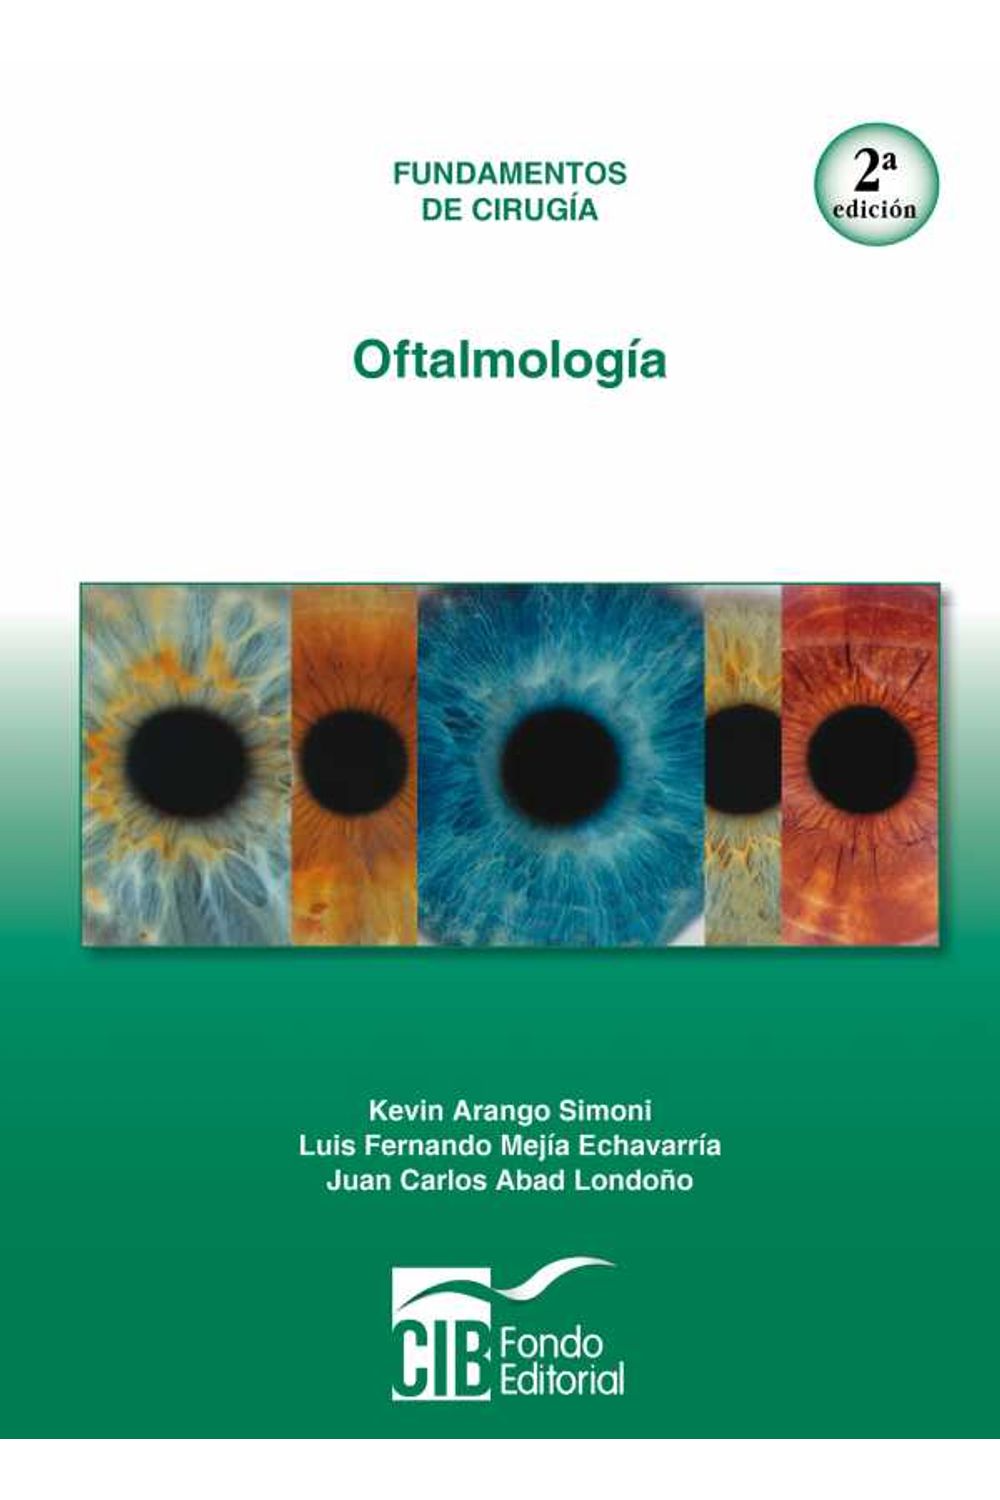 bw-oftalmologiacutea-2a-ed-cib-9789588843032